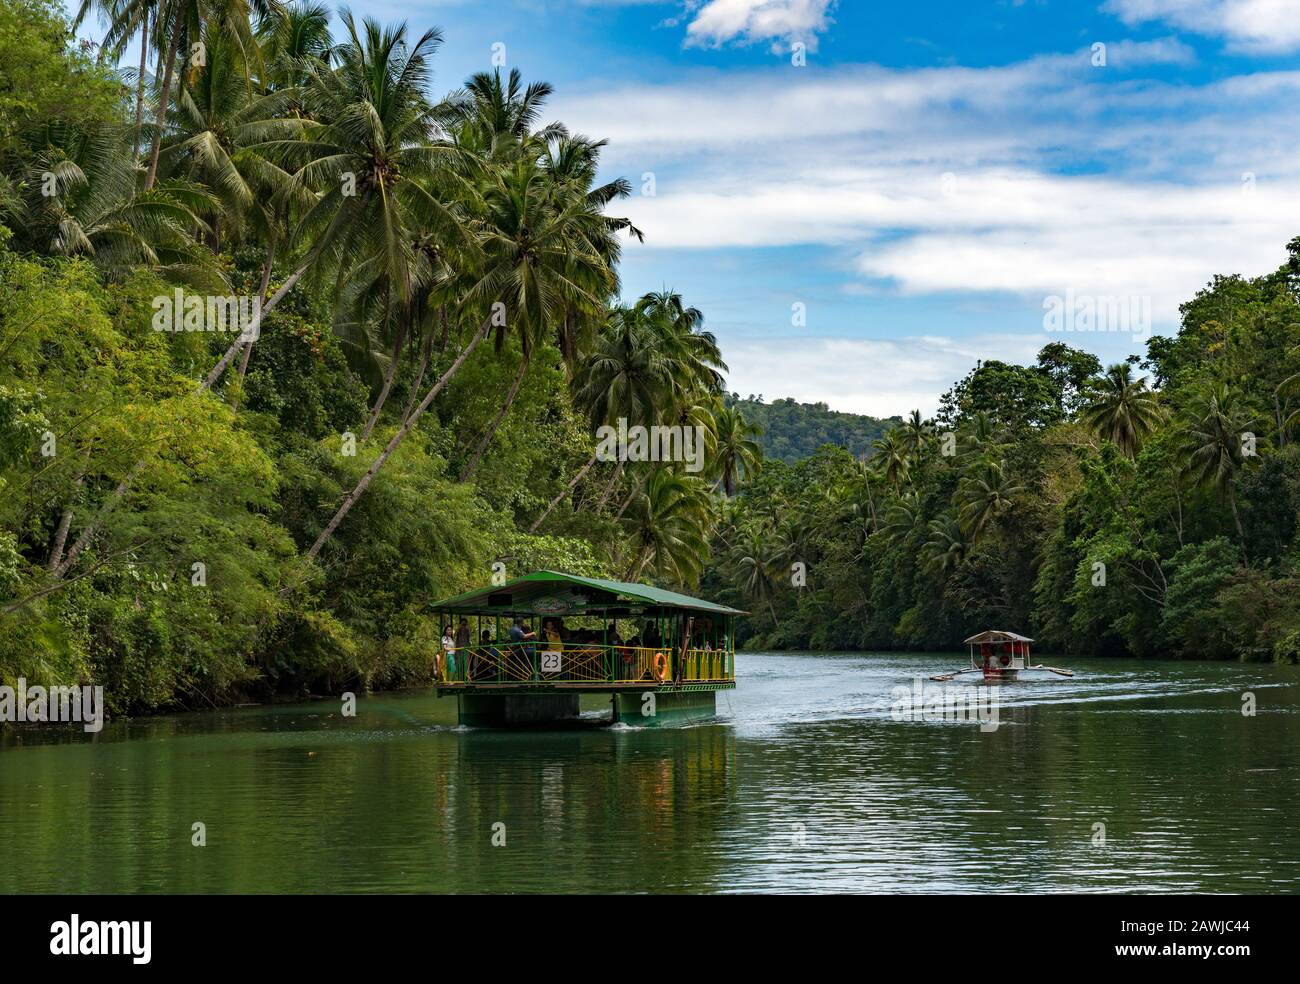 El crucero por el río Loboc es un río en la provincia de Bohol en Filipinas. Es uno de los principales destinos turísticos de Bohol. Foto de stock